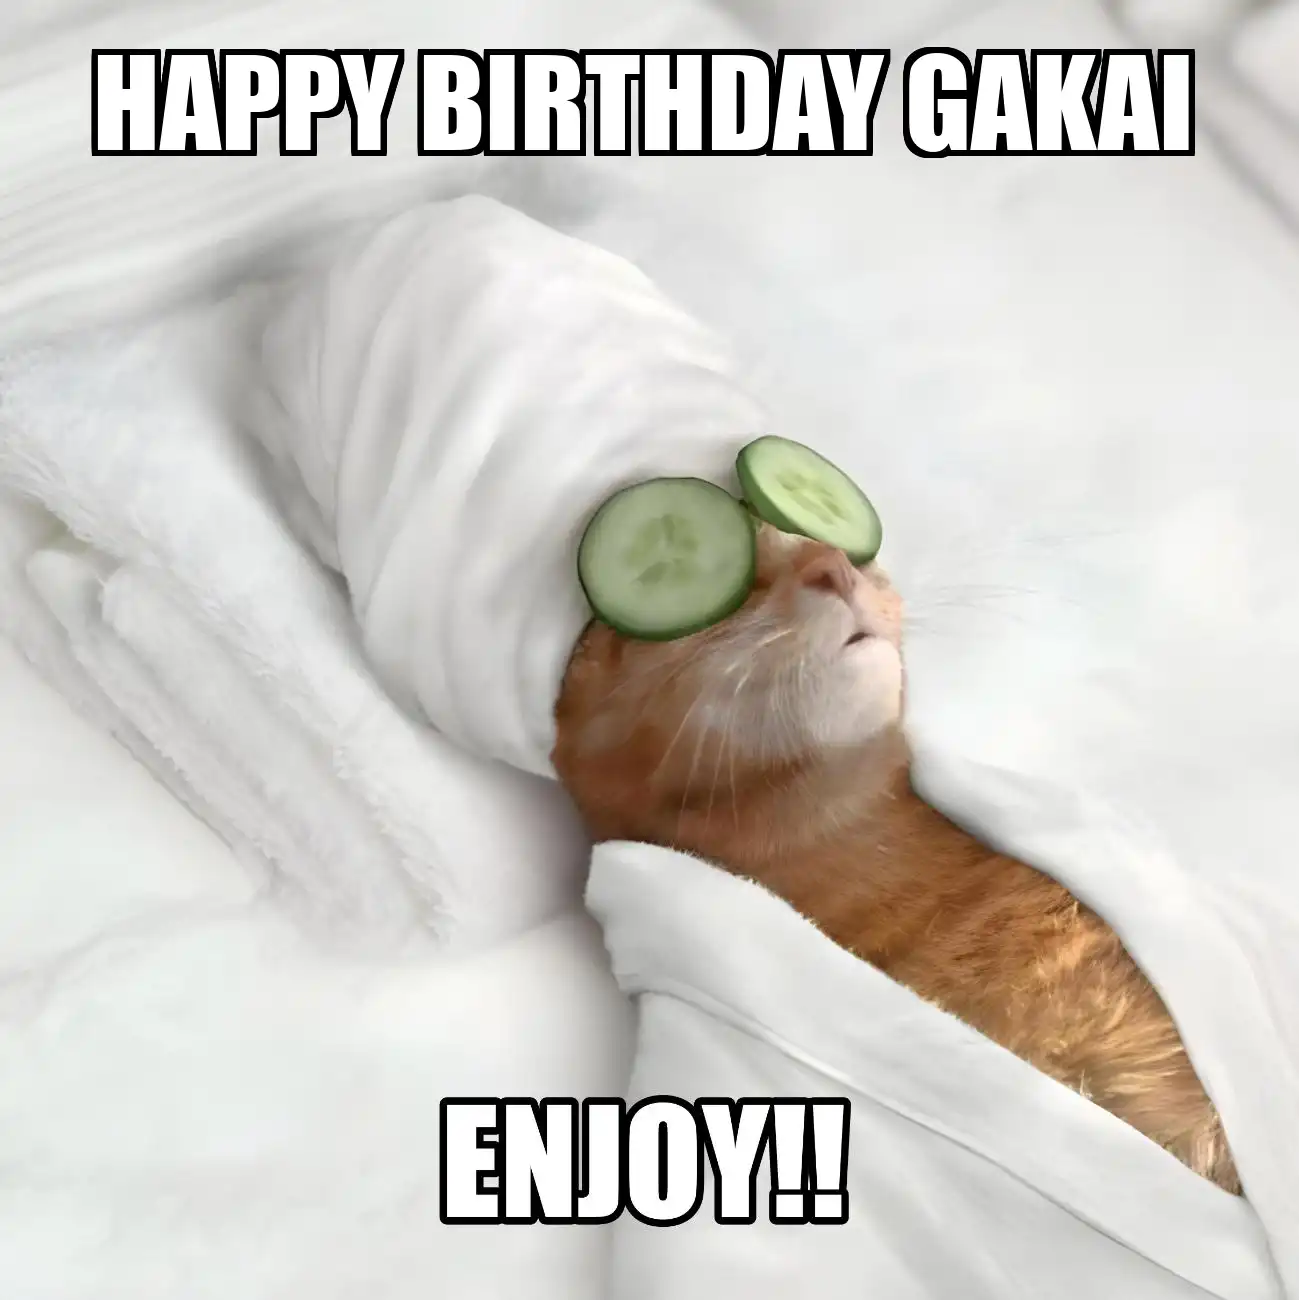 Happy Birthday Gakai Enjoy Cat Meme